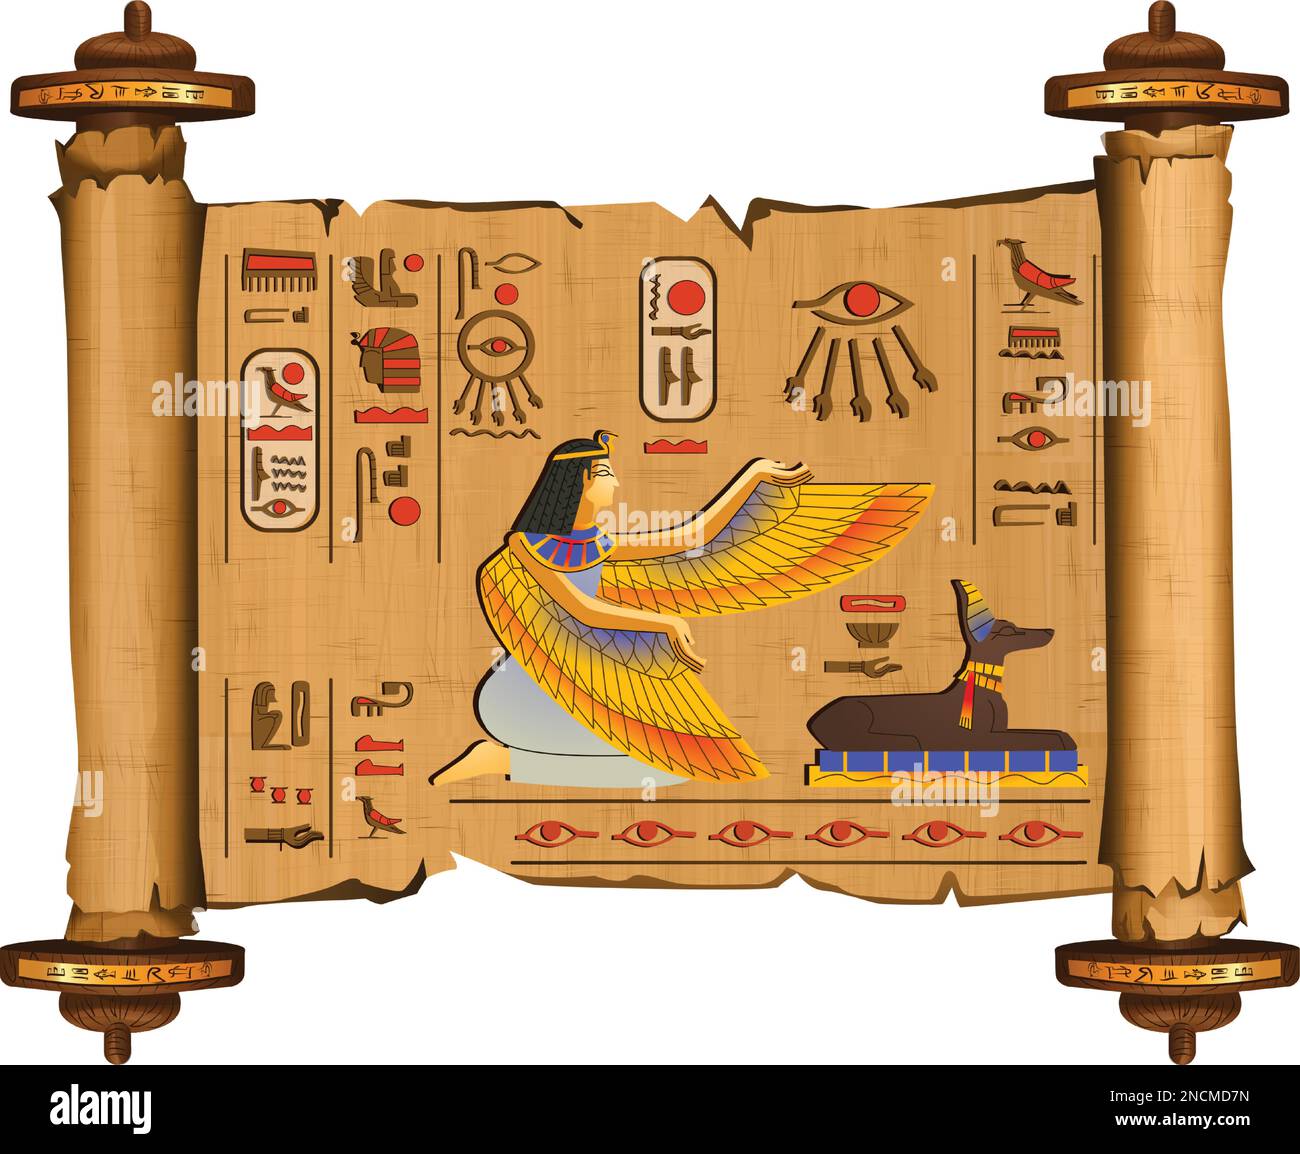 Alte ägyptische Papyrus-Schriftrolle mit Holzstäbchen Cartoon-Vektor mit Hieroglyphen und ägyptischen Kultursymbolen, die antiken Götter Isis und Anubis, isoliert auf weißem Hintergrund Stock Vektor